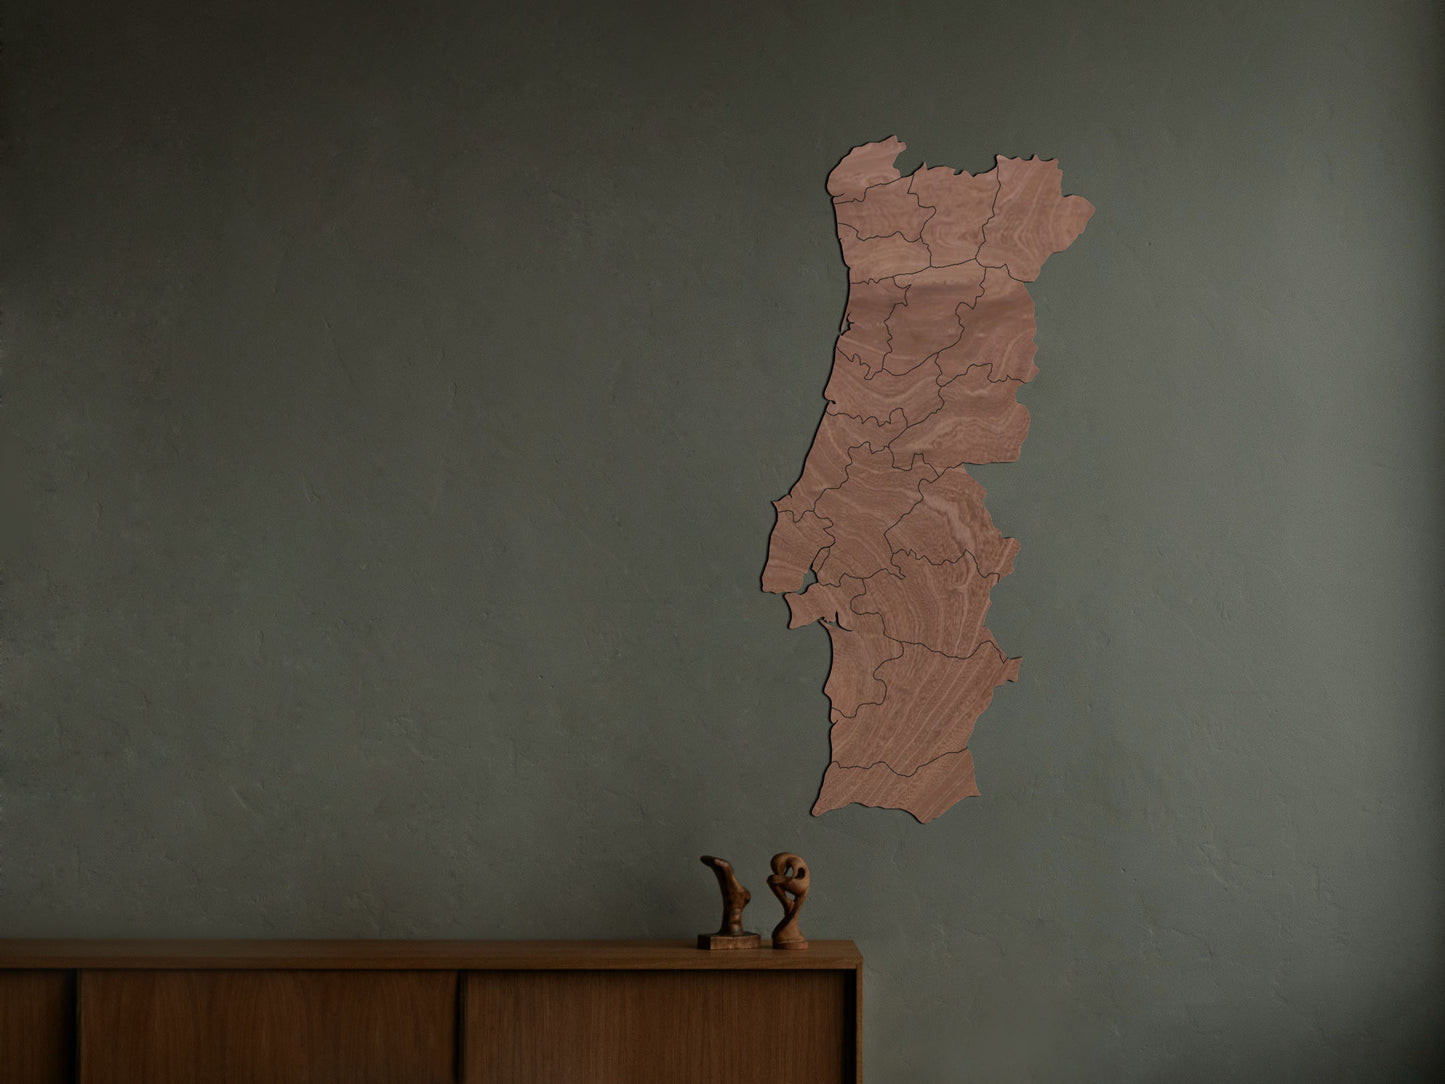 Houten landkaart - Portugal